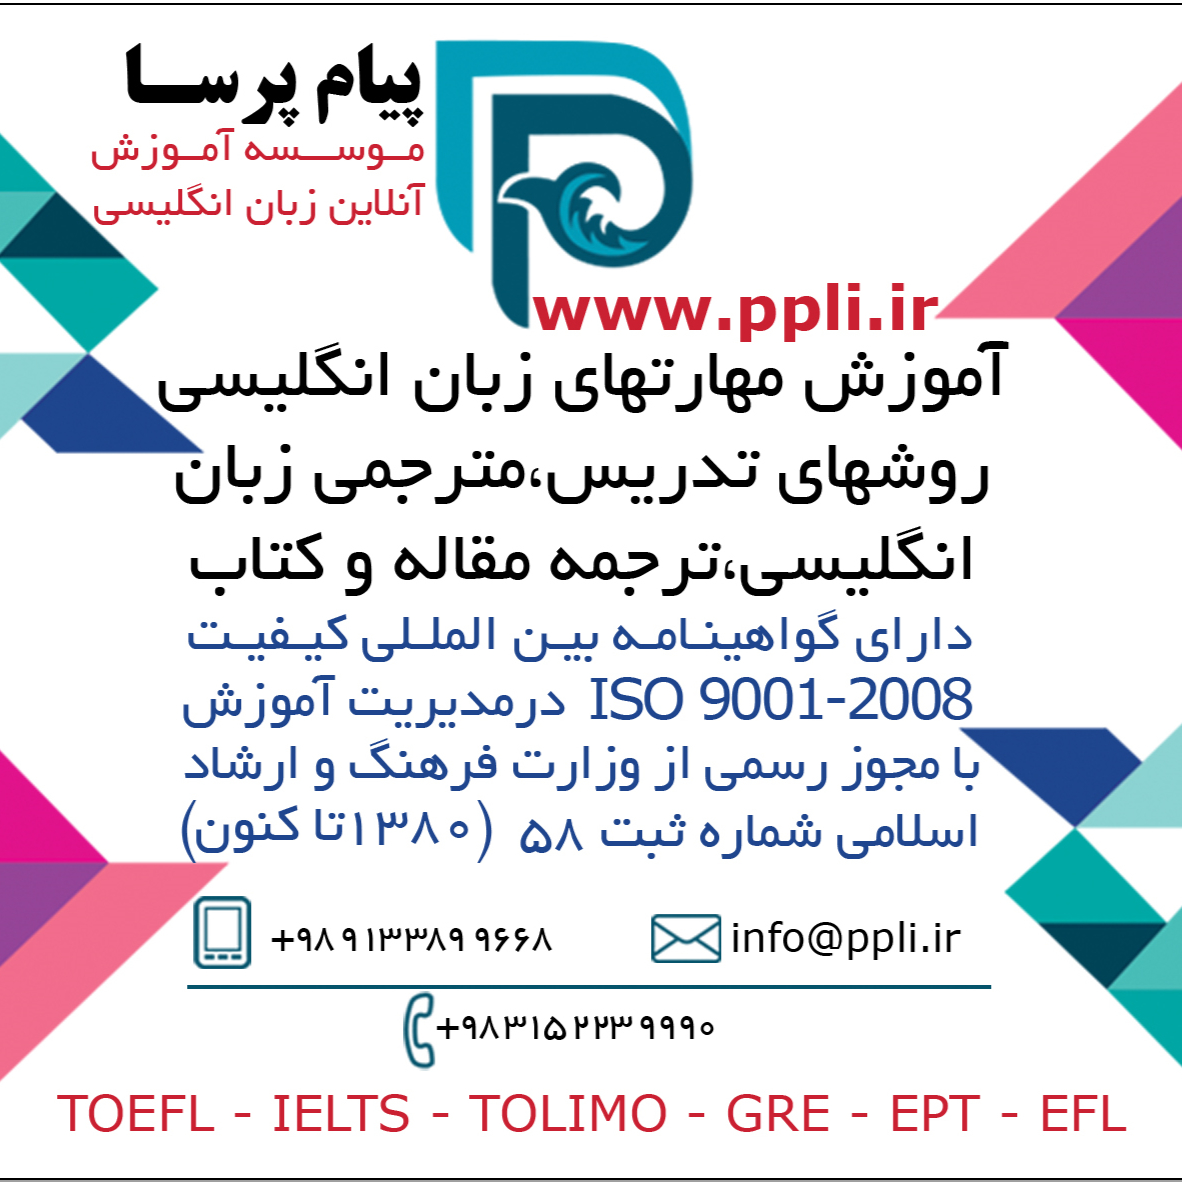 ppli.ir موسسه آموزش آنلاین زبان پیام پرسا